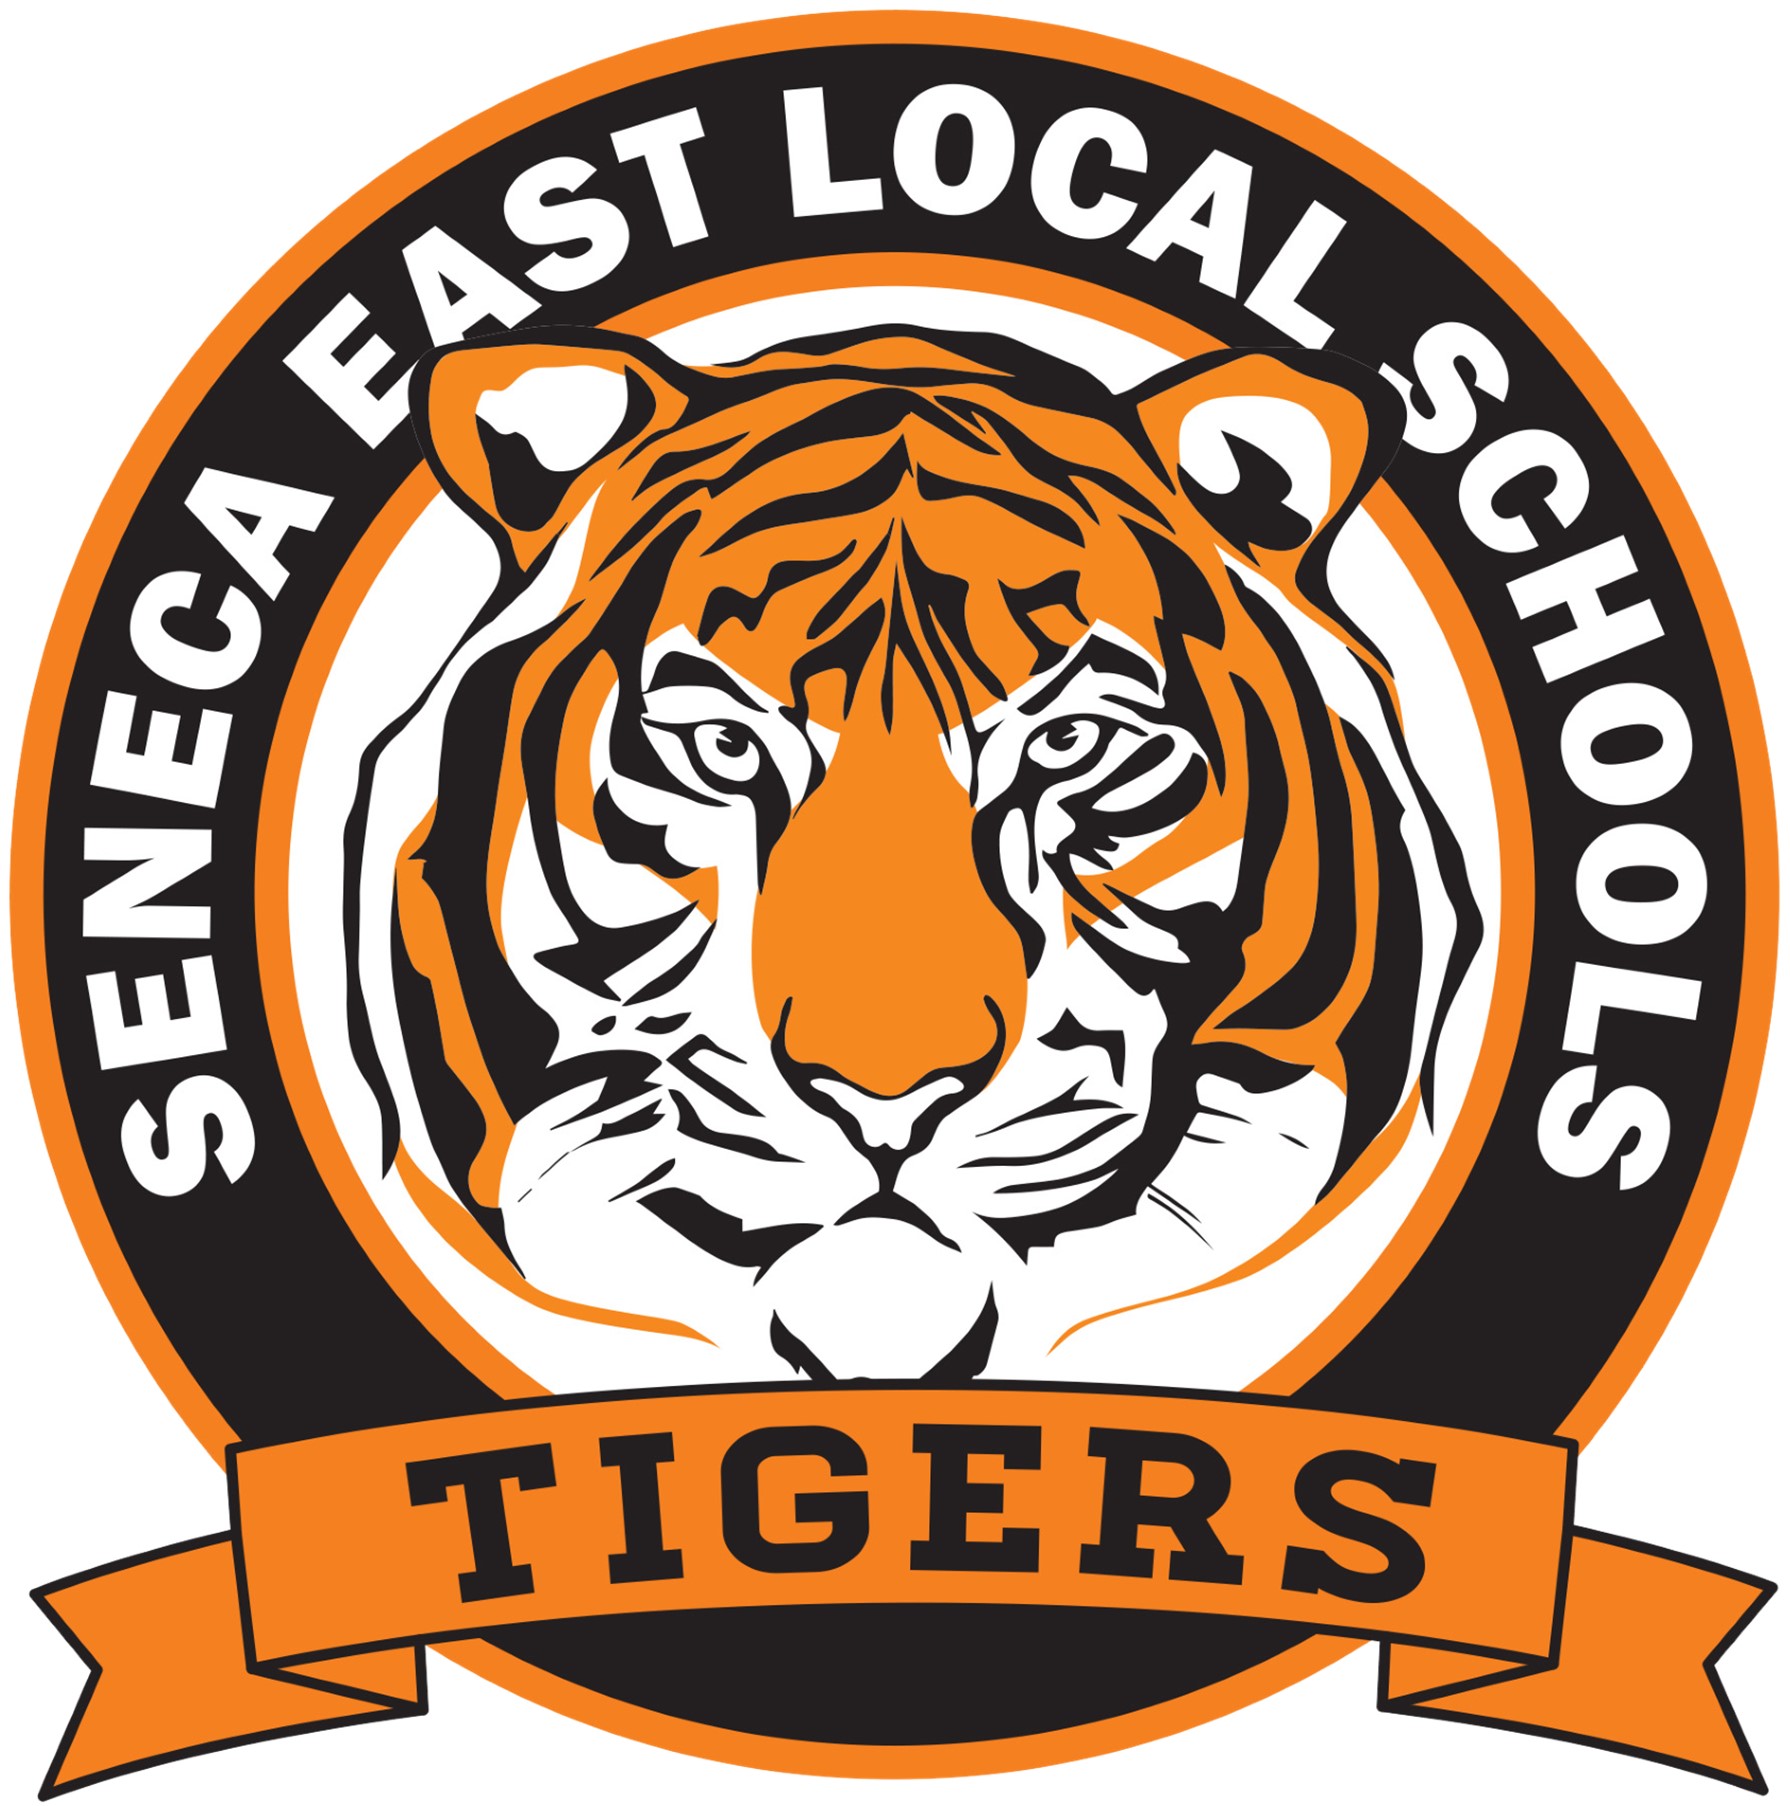 Seneca East Local Schools